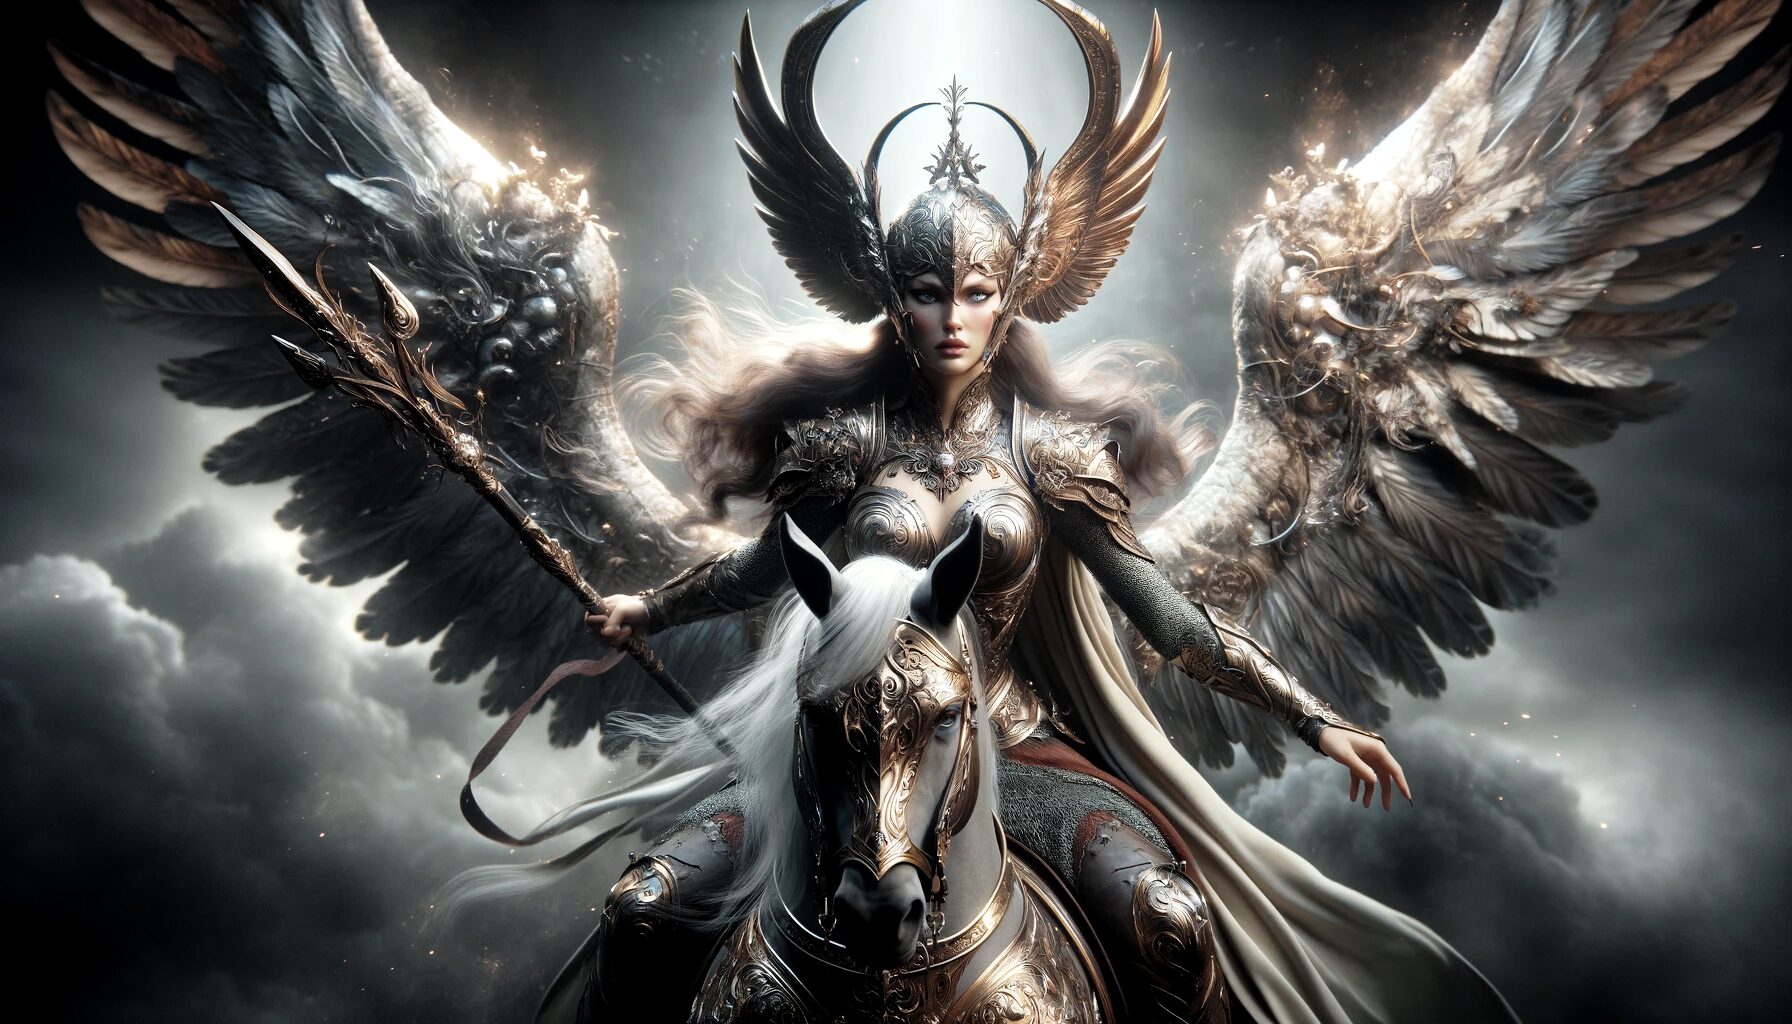 Valkyrie - Warrior Maiden of Valhalla | mythicalcreatures.info